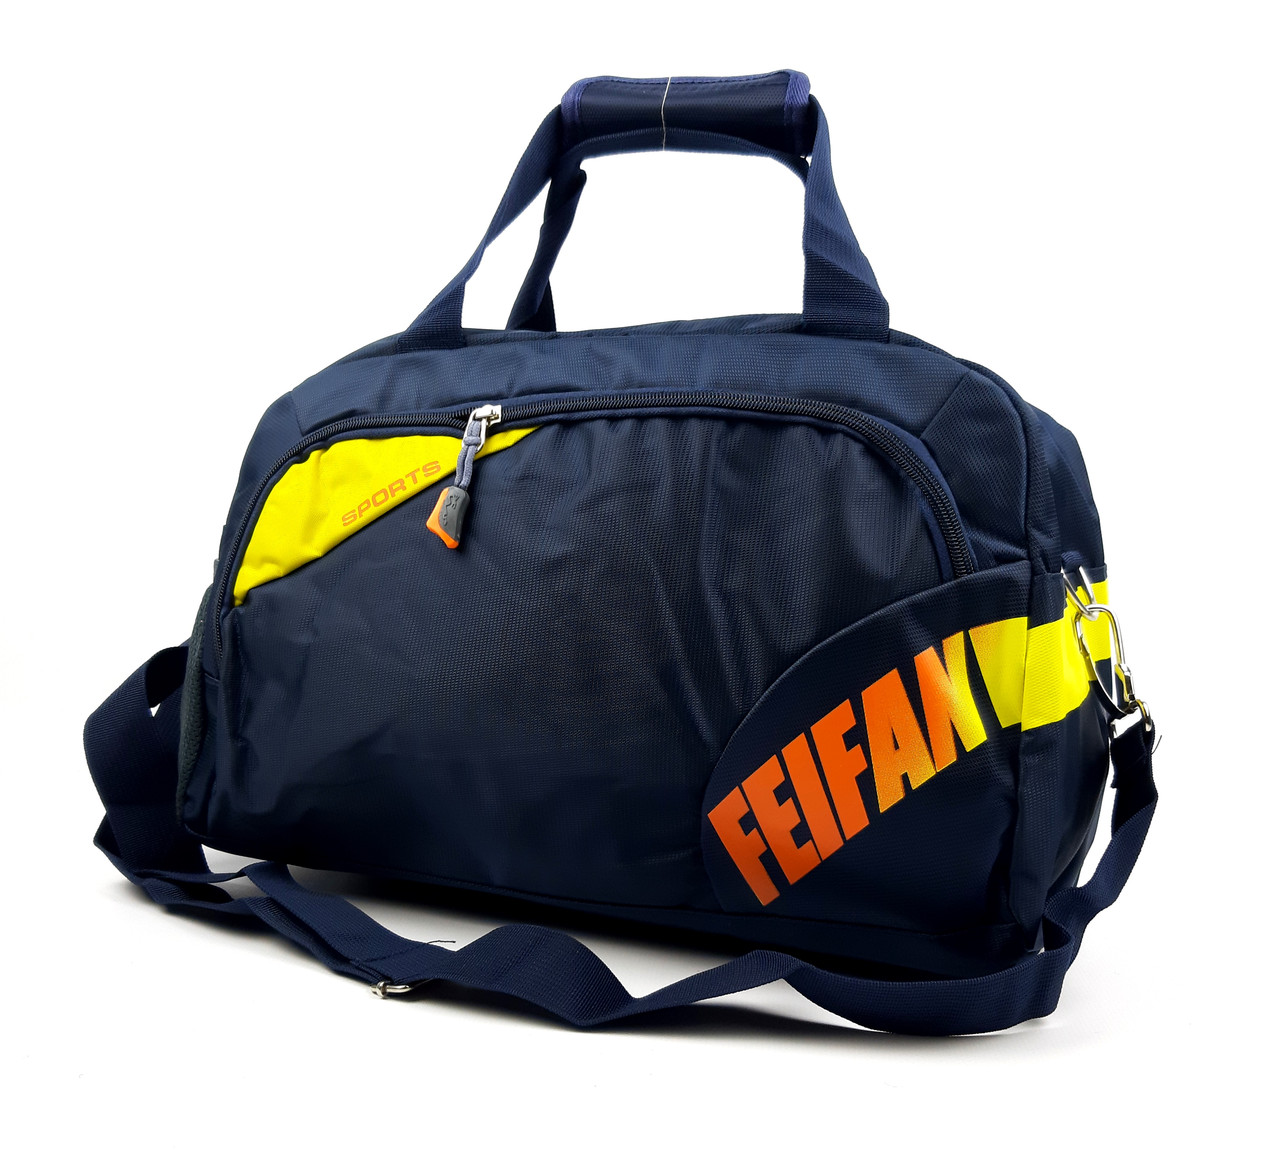 Середня спортивна сумка, теммно-синя (18 літрів)